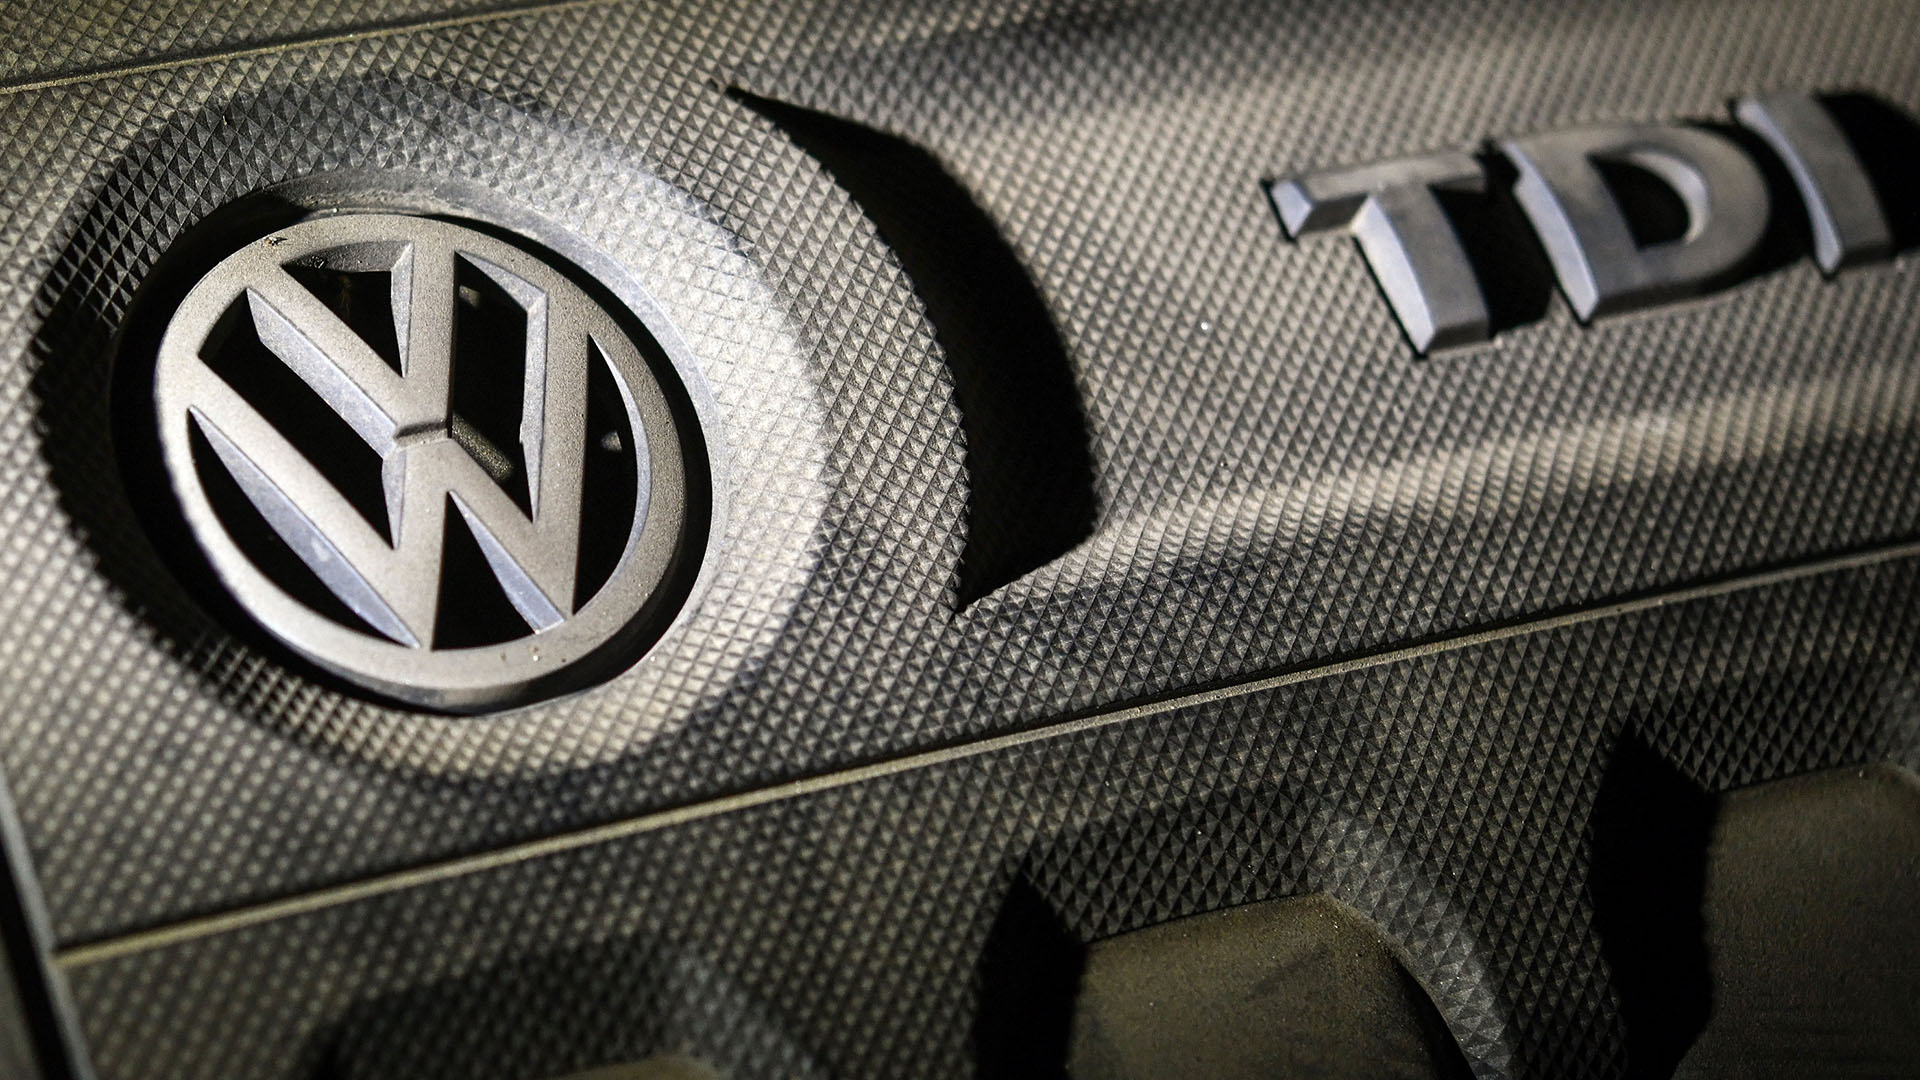 Dieselmotorabdeckung eines VW Golf | dpa